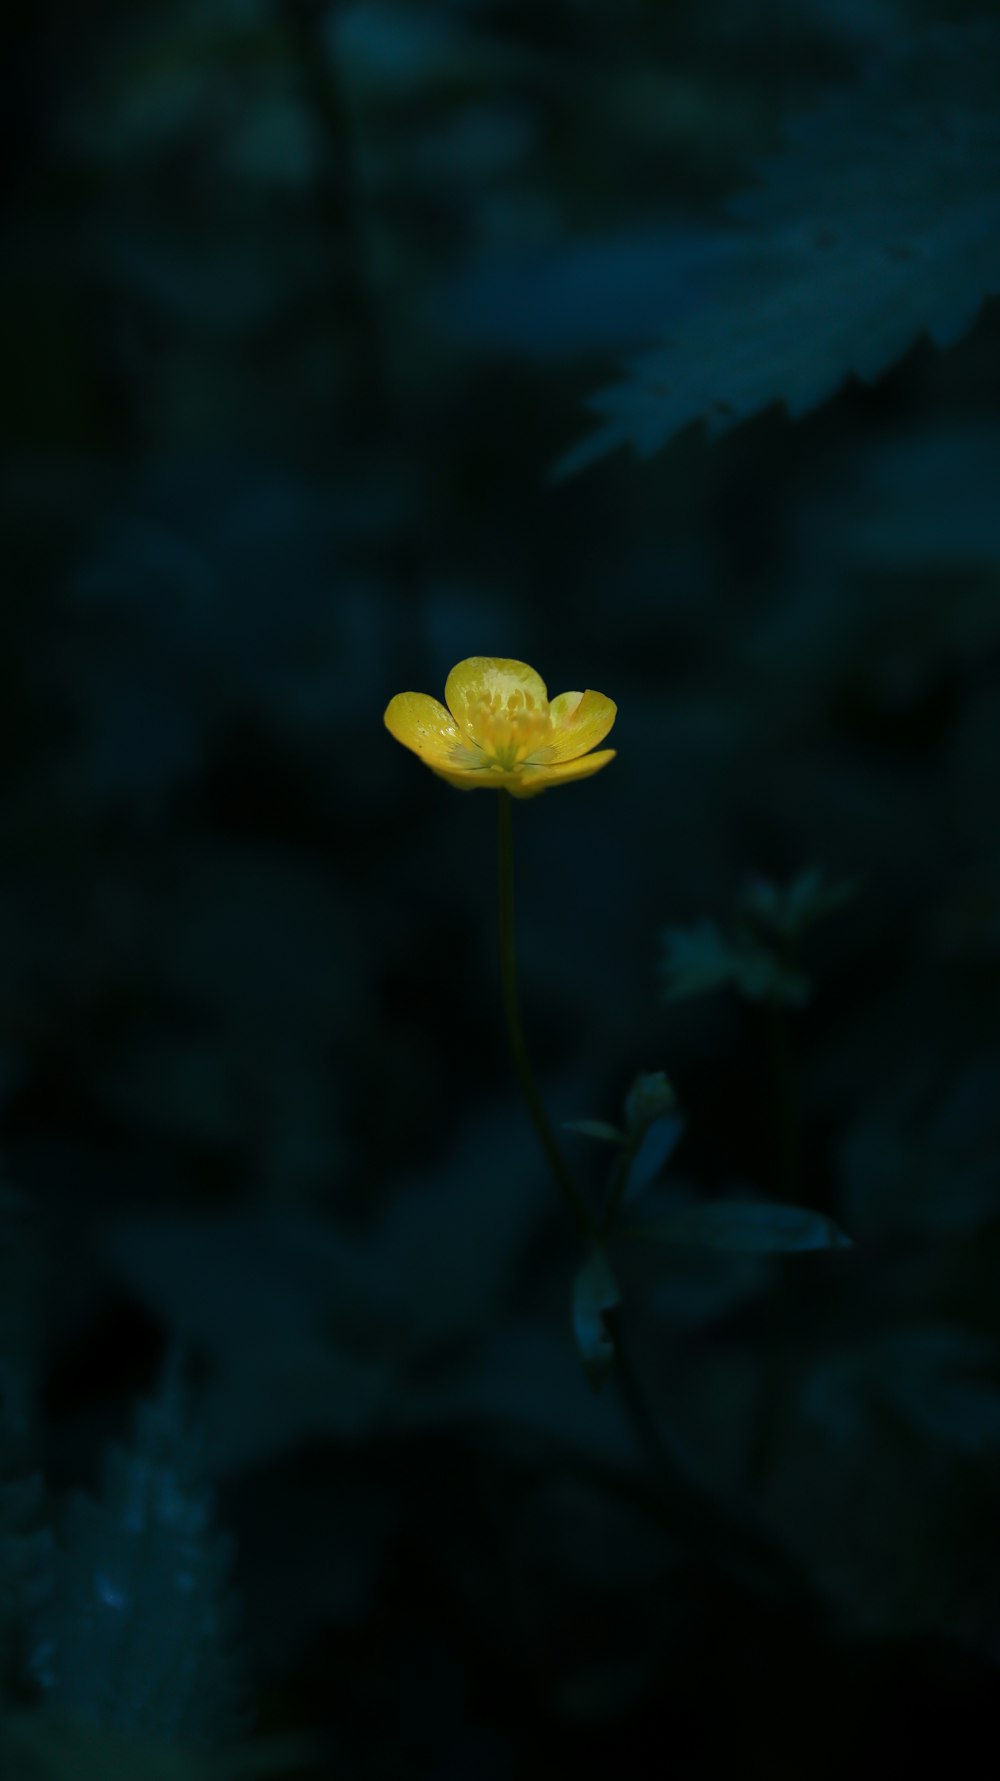 une seule fleur jaune dans l’obscurité